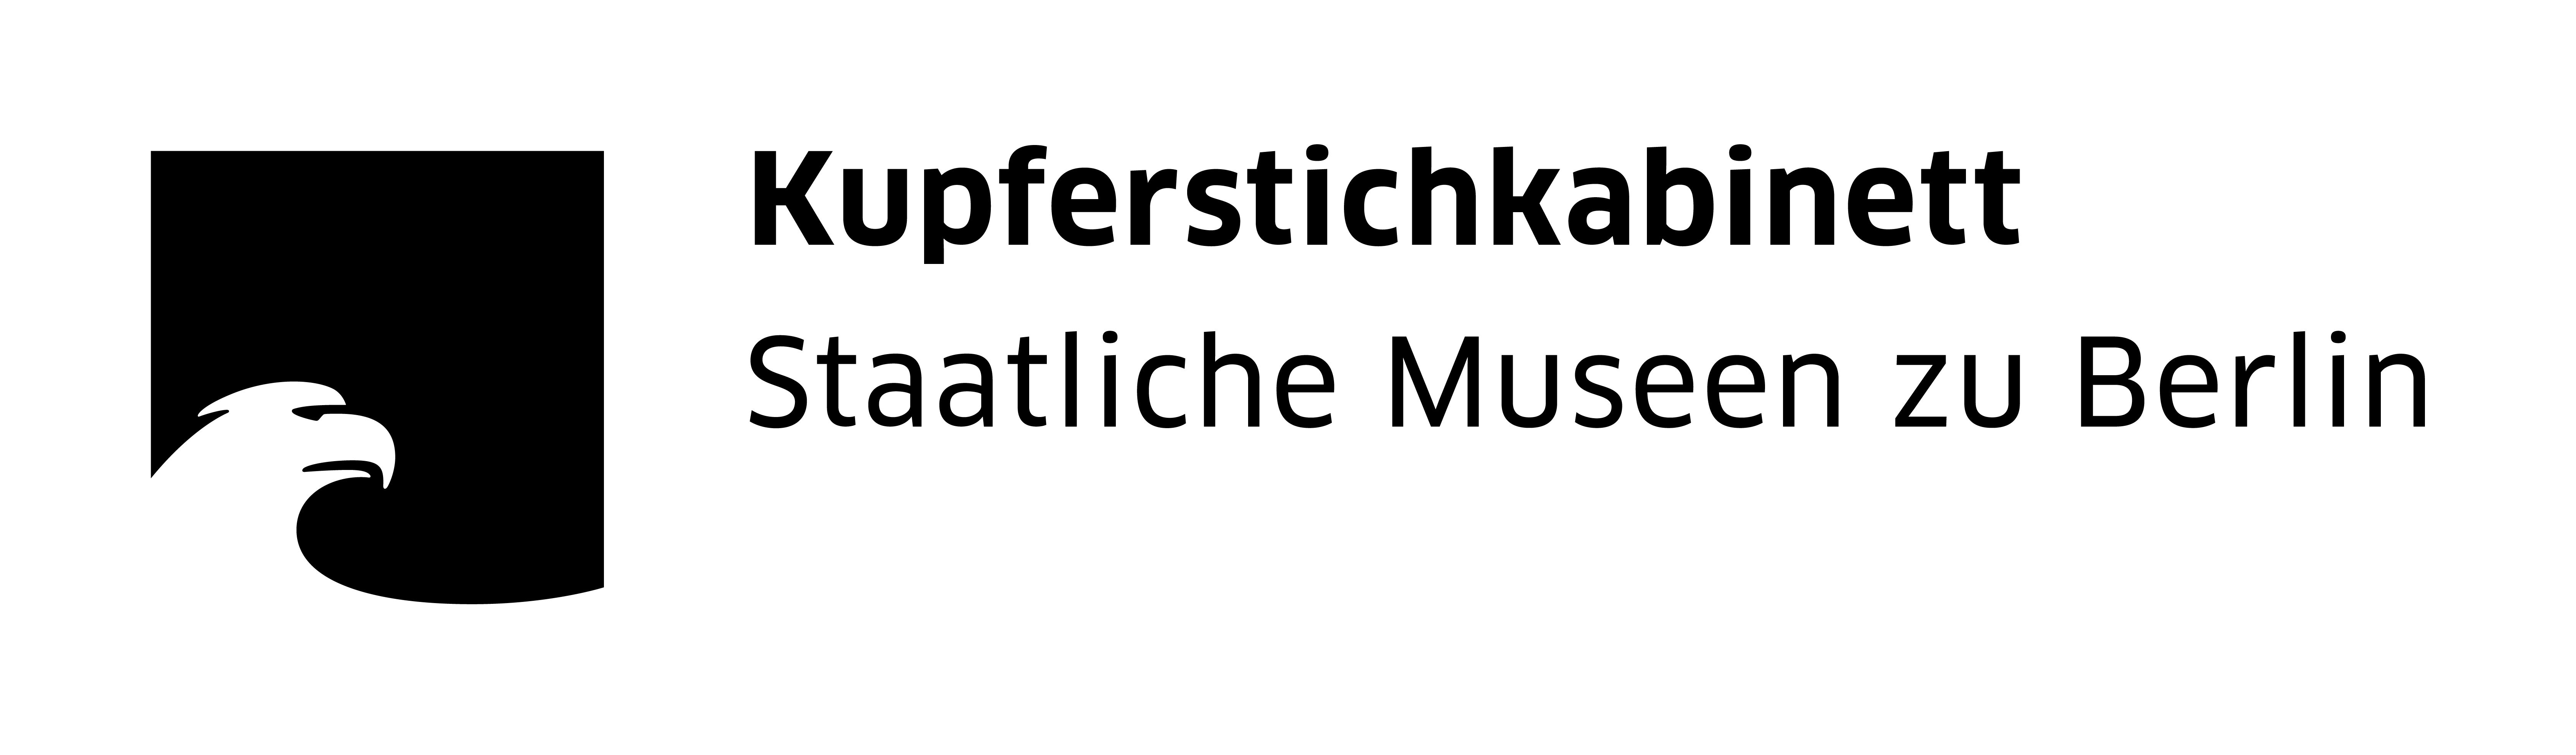  Kupferstichkabinett - Staatliche Museen zu Berlin